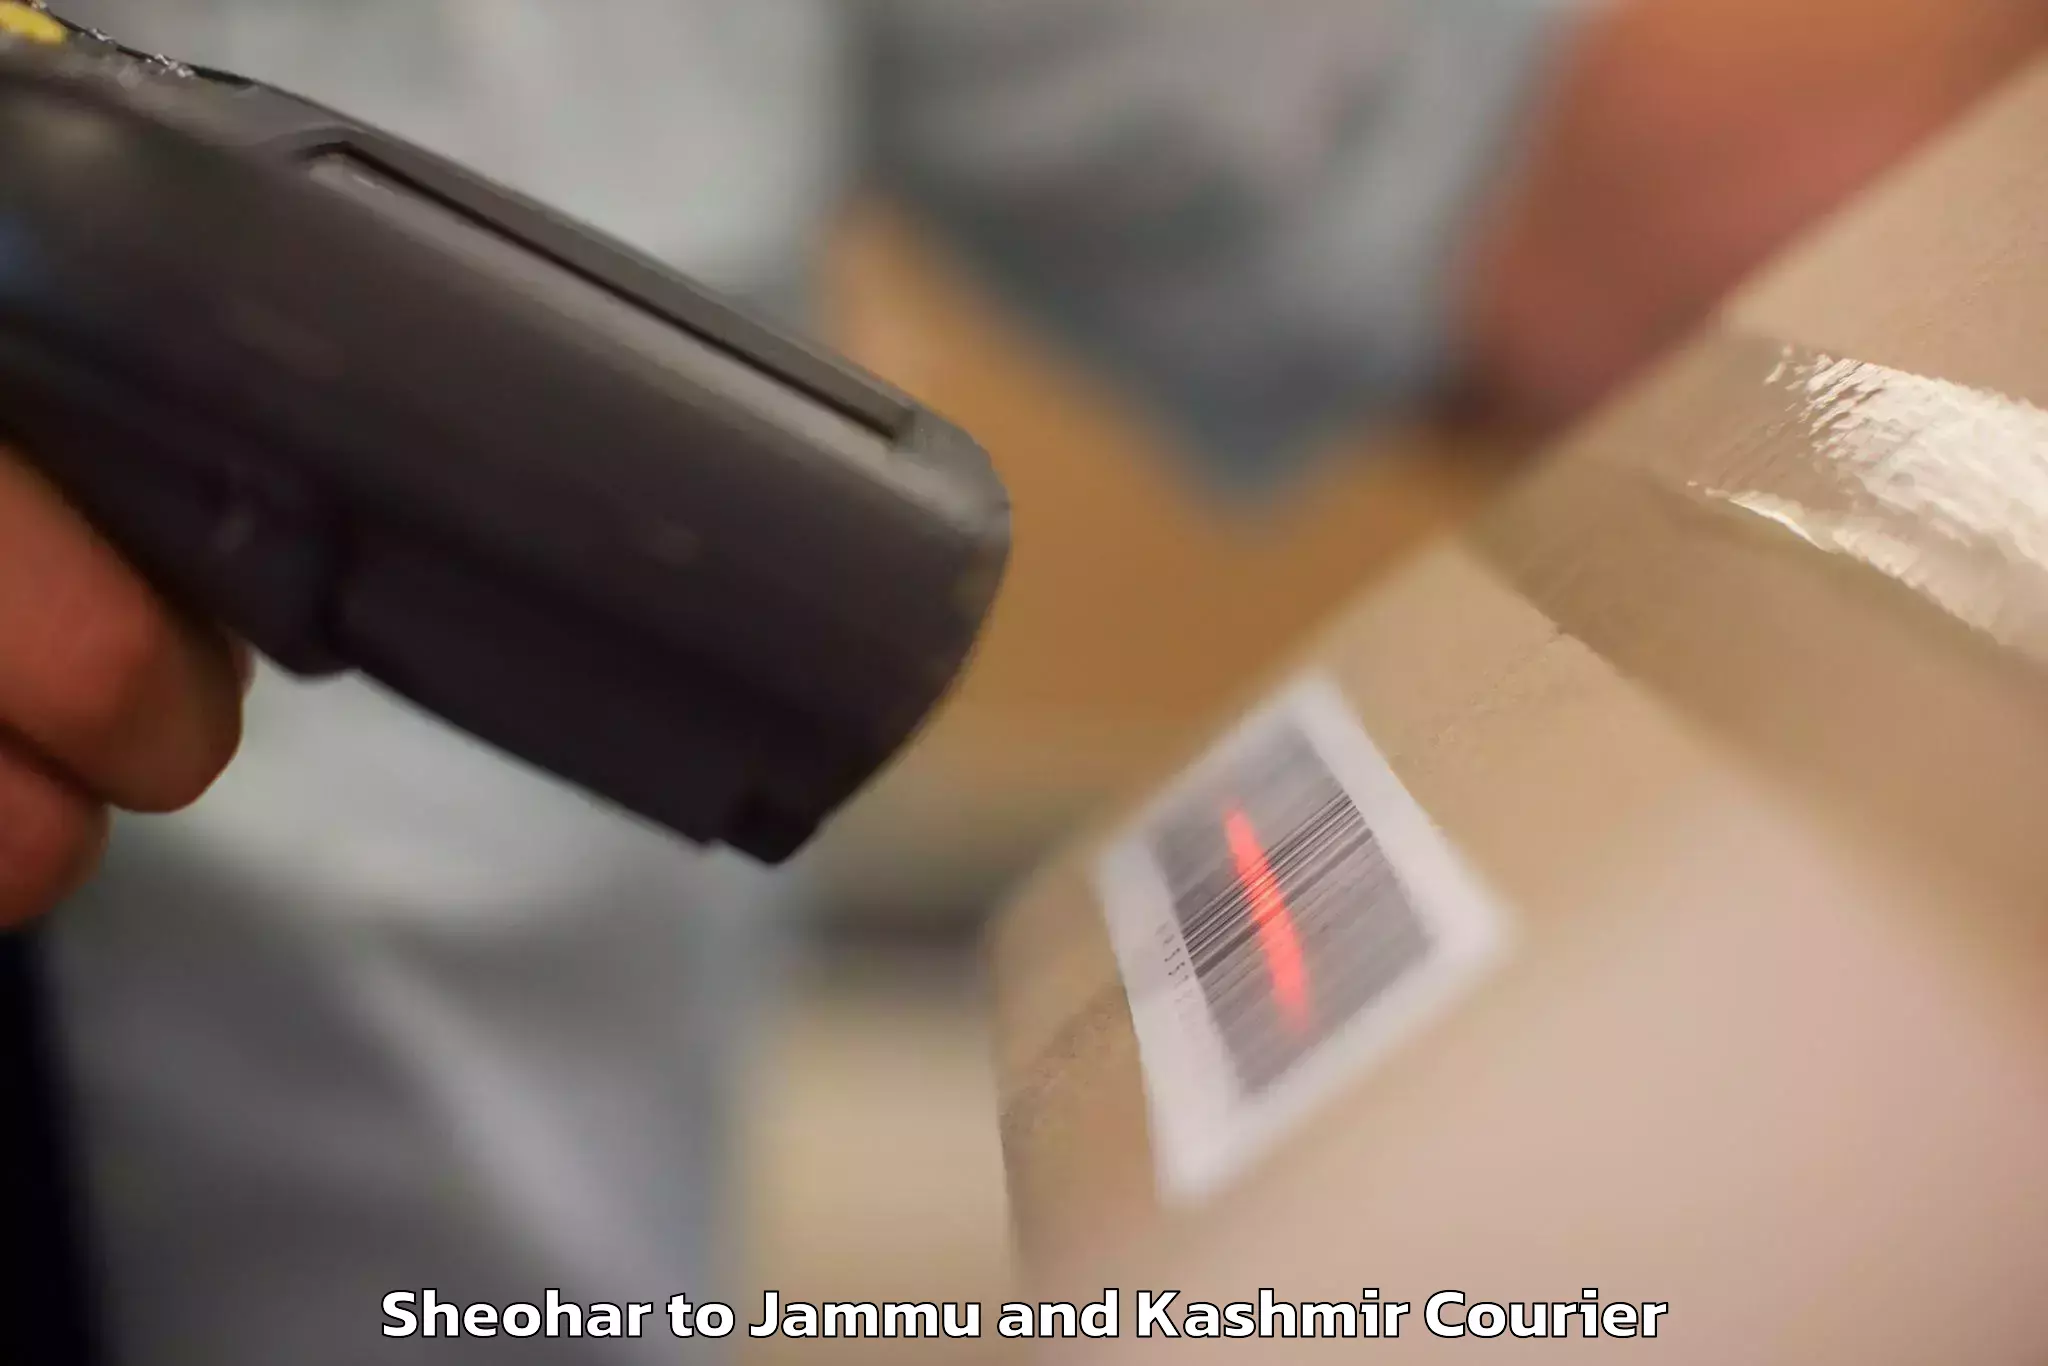 Door-to-door baggage service Sheohar to Jammu and Kashmir